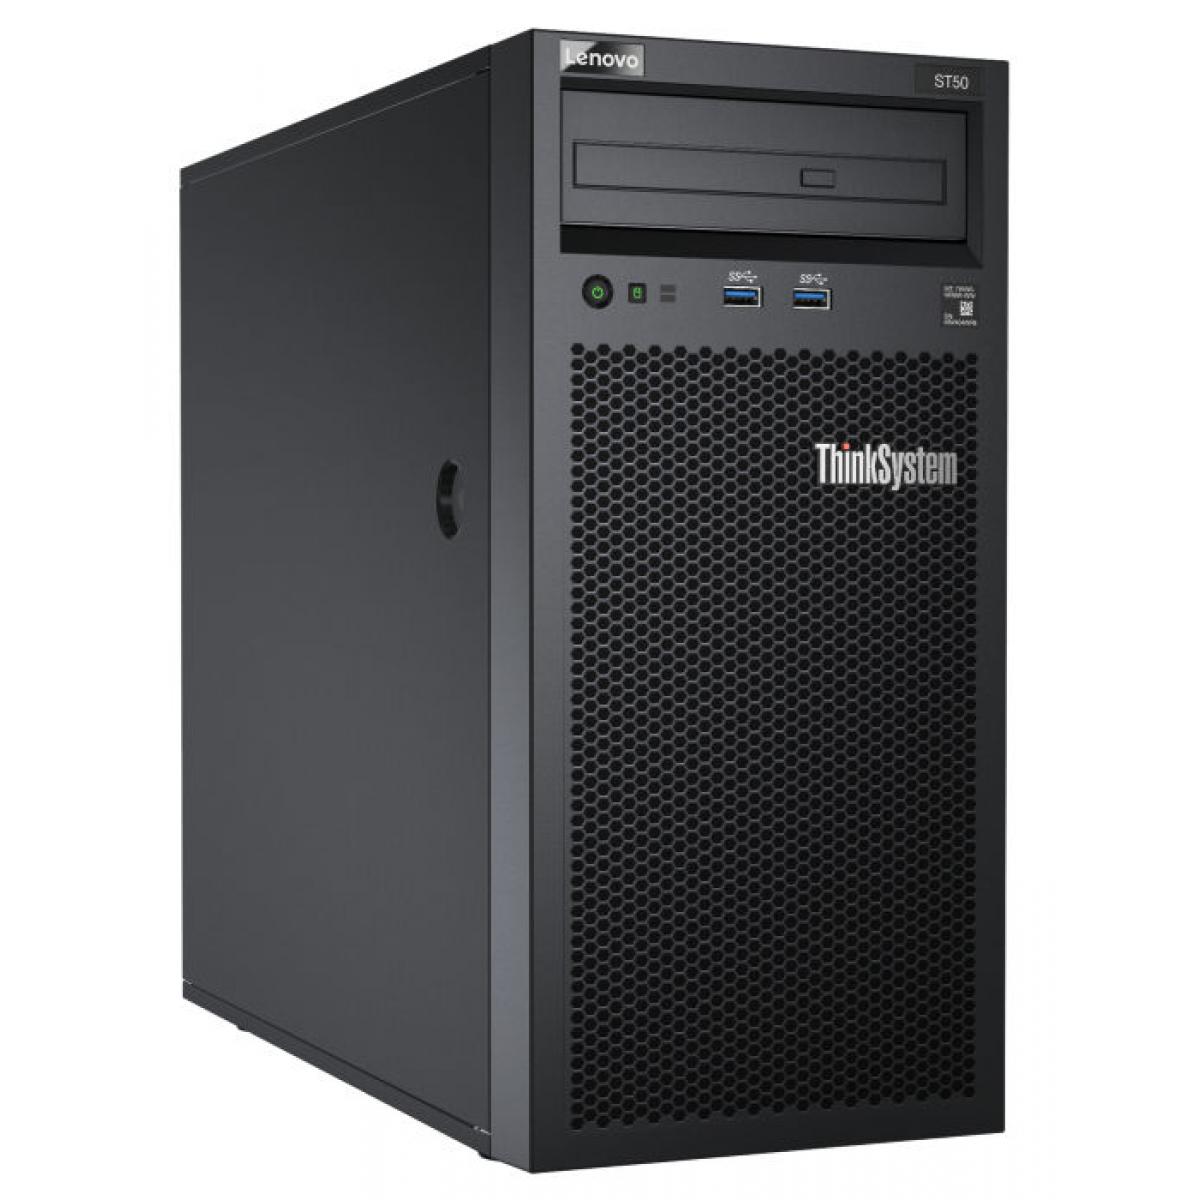 Server Lenovo ThinkSystem ST50 Intel Xeon E-2224G 4C 71 W 3,5 GHz, 16GB TruDDR4 2666MHz,1TB SATA | Arrichetta.com.ar | 7Y49A042LA | Arrichetta